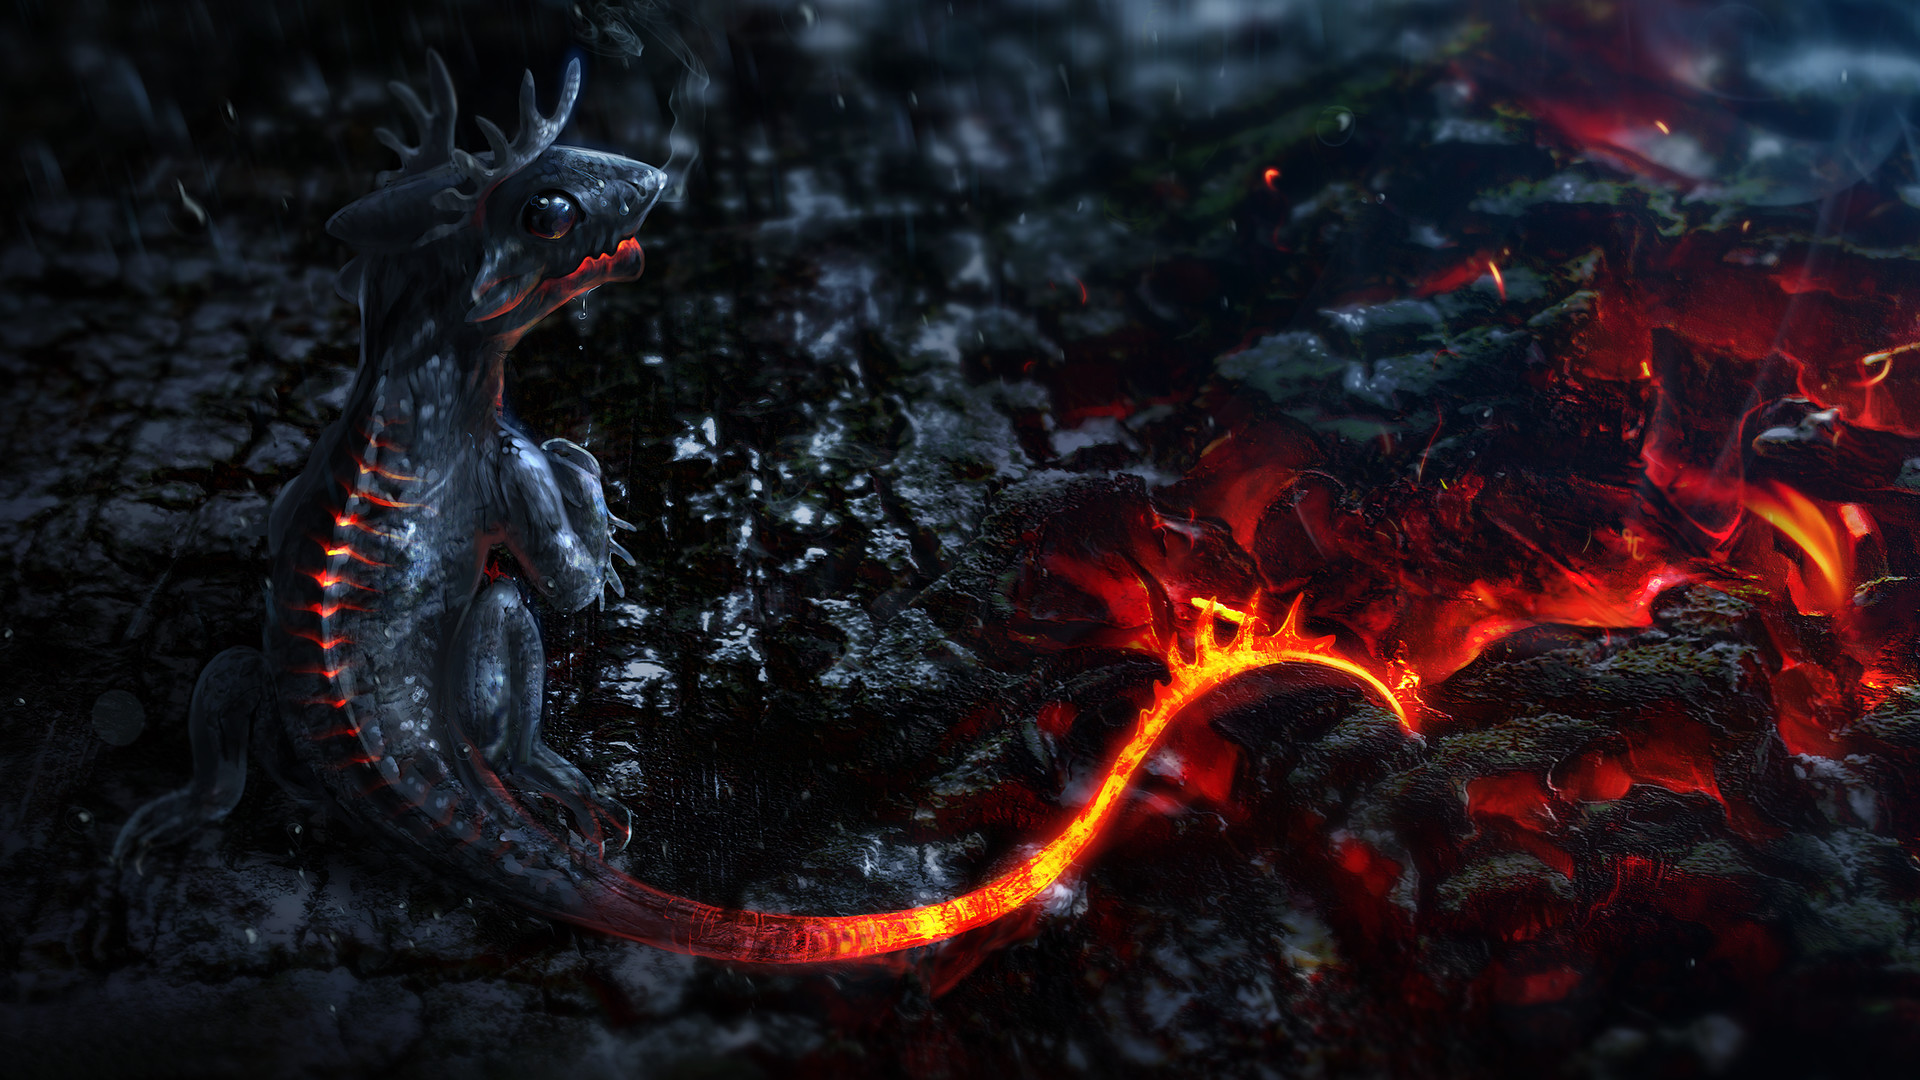 Dragon Desktop Background Image